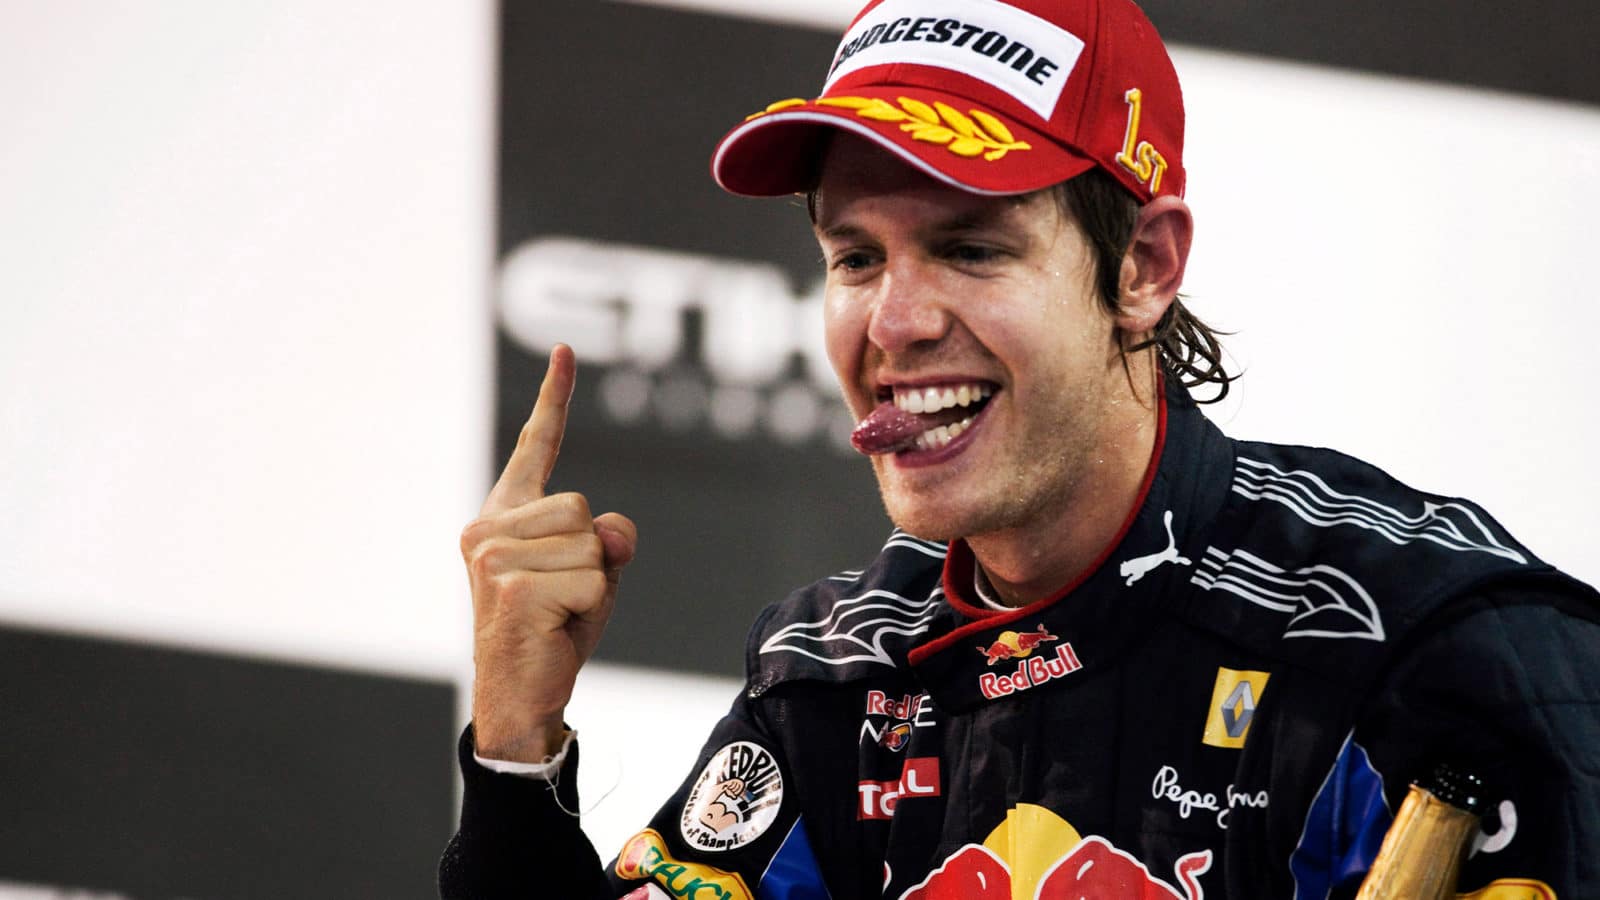 Sebastian Vettel celebrates winning the 2008 Italian Grand Prix for Toro Rosso